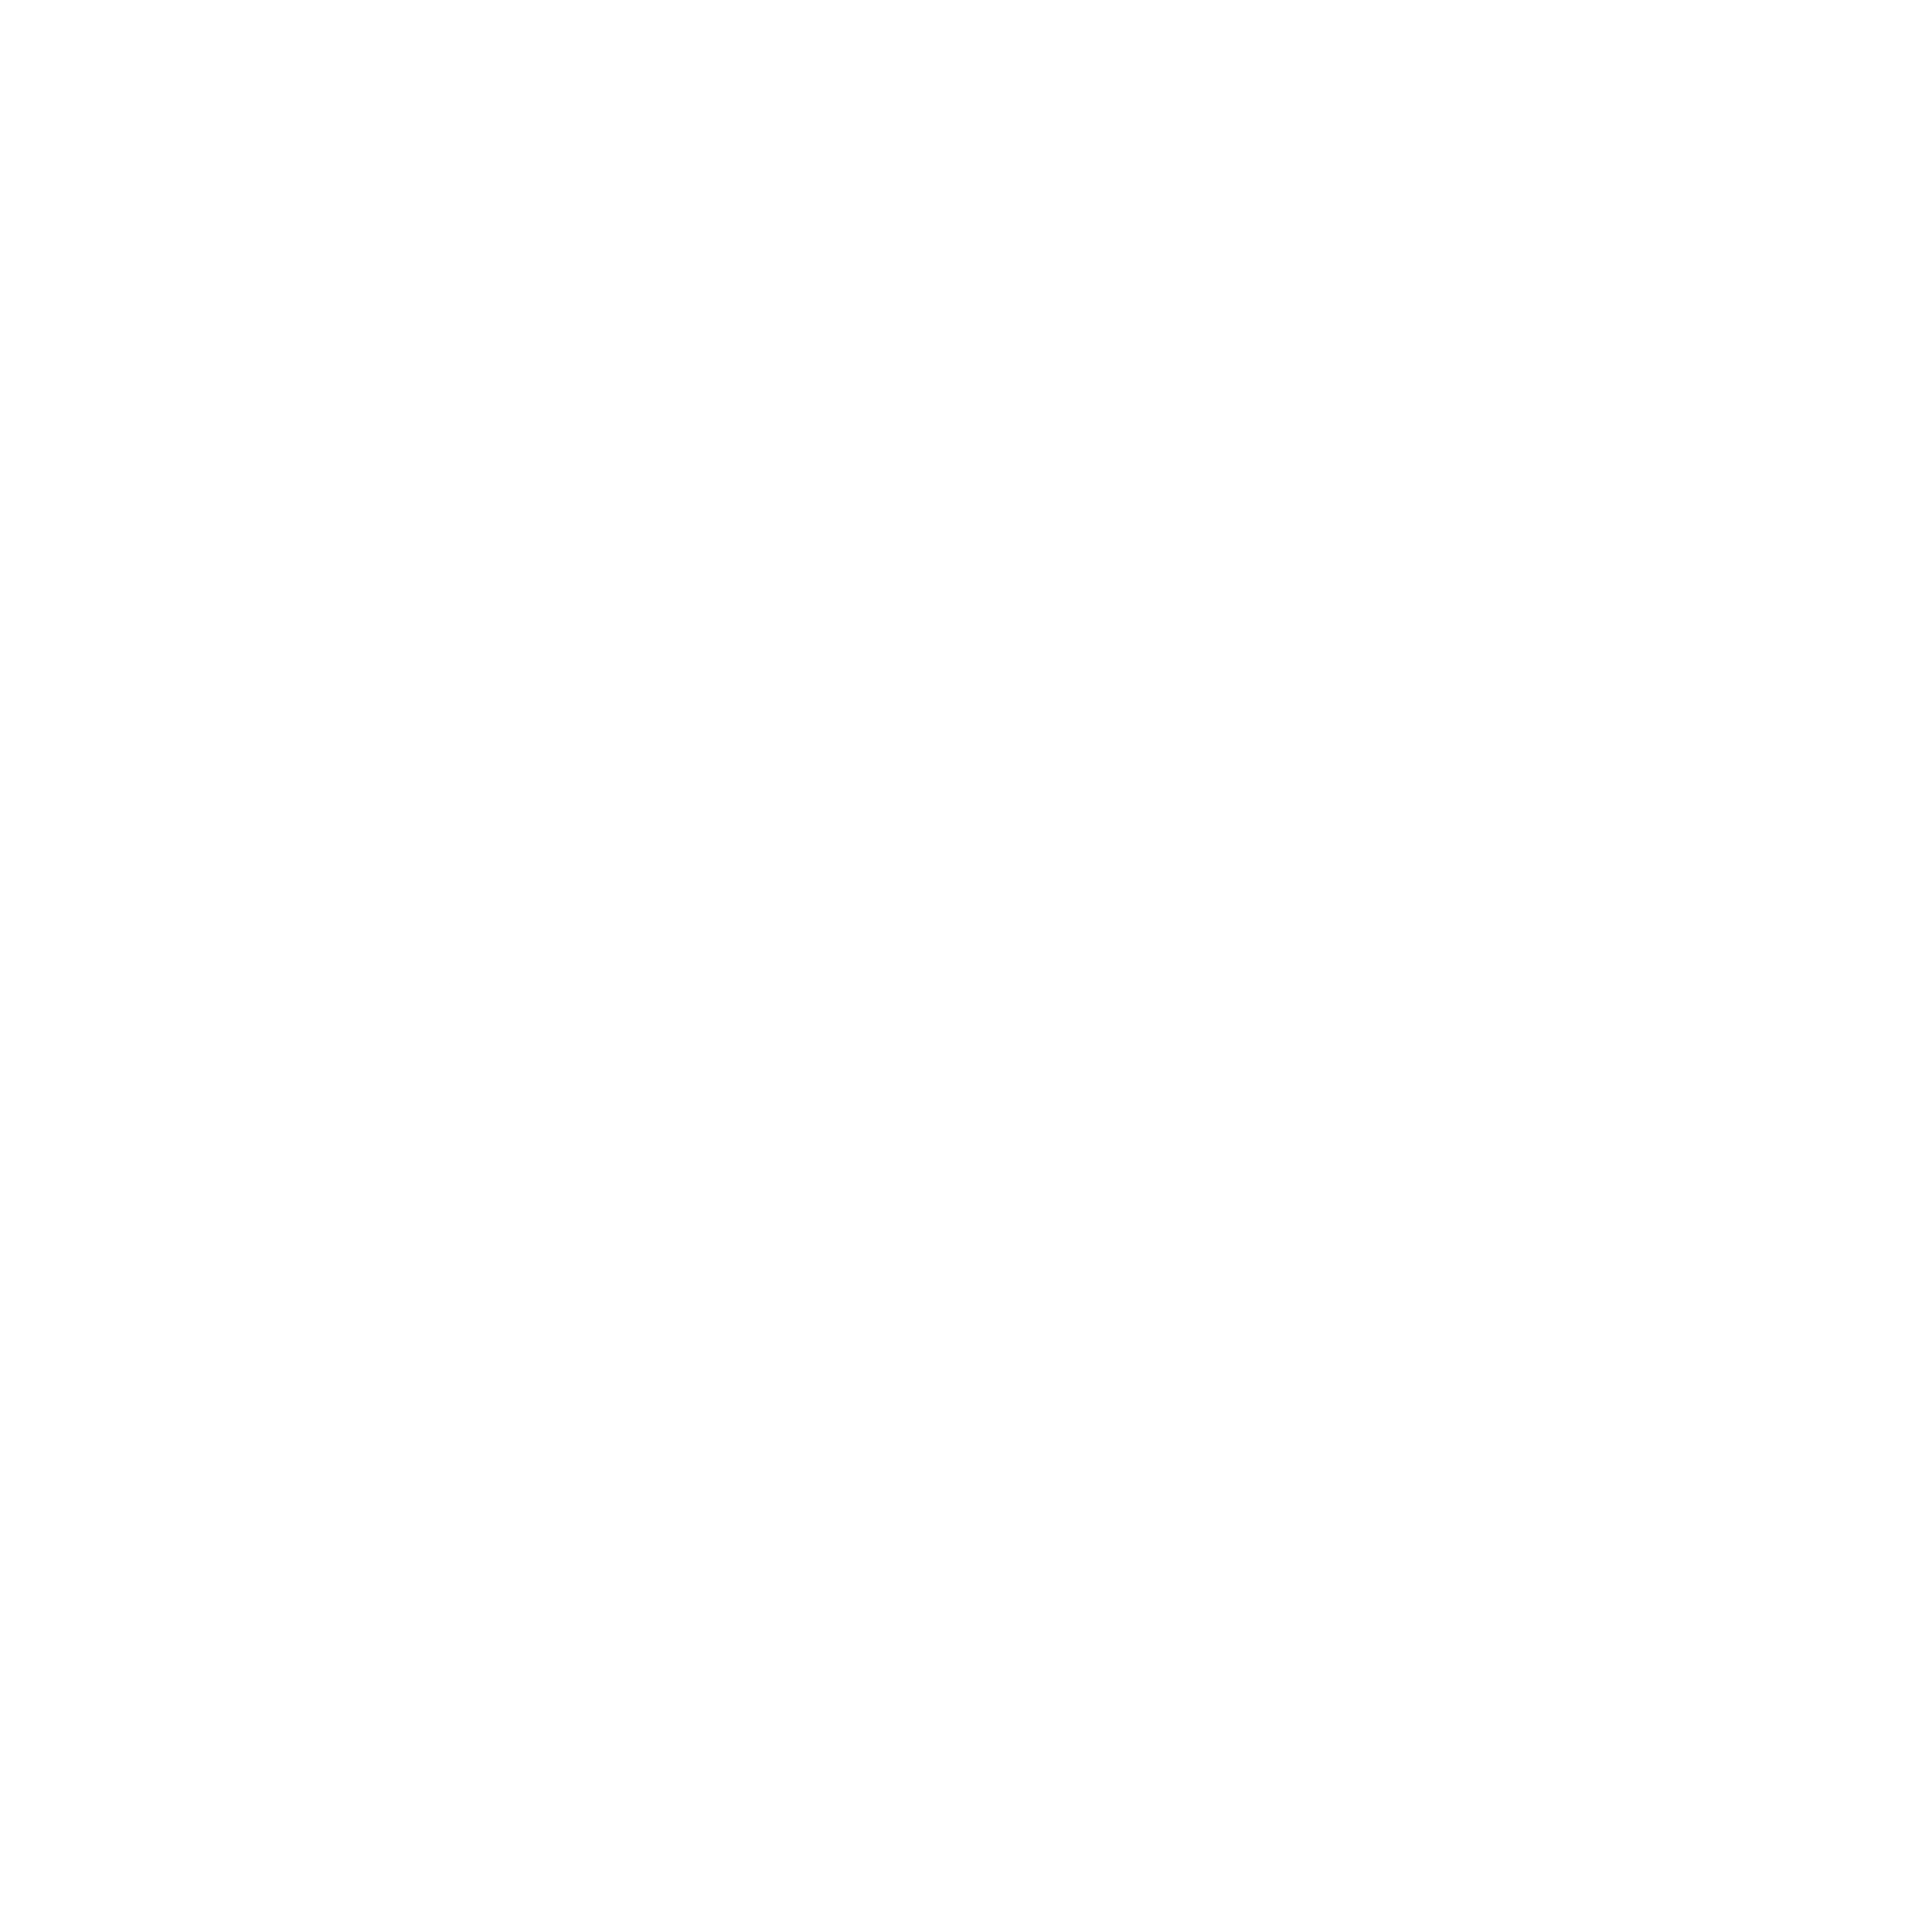 Lake Country Logo